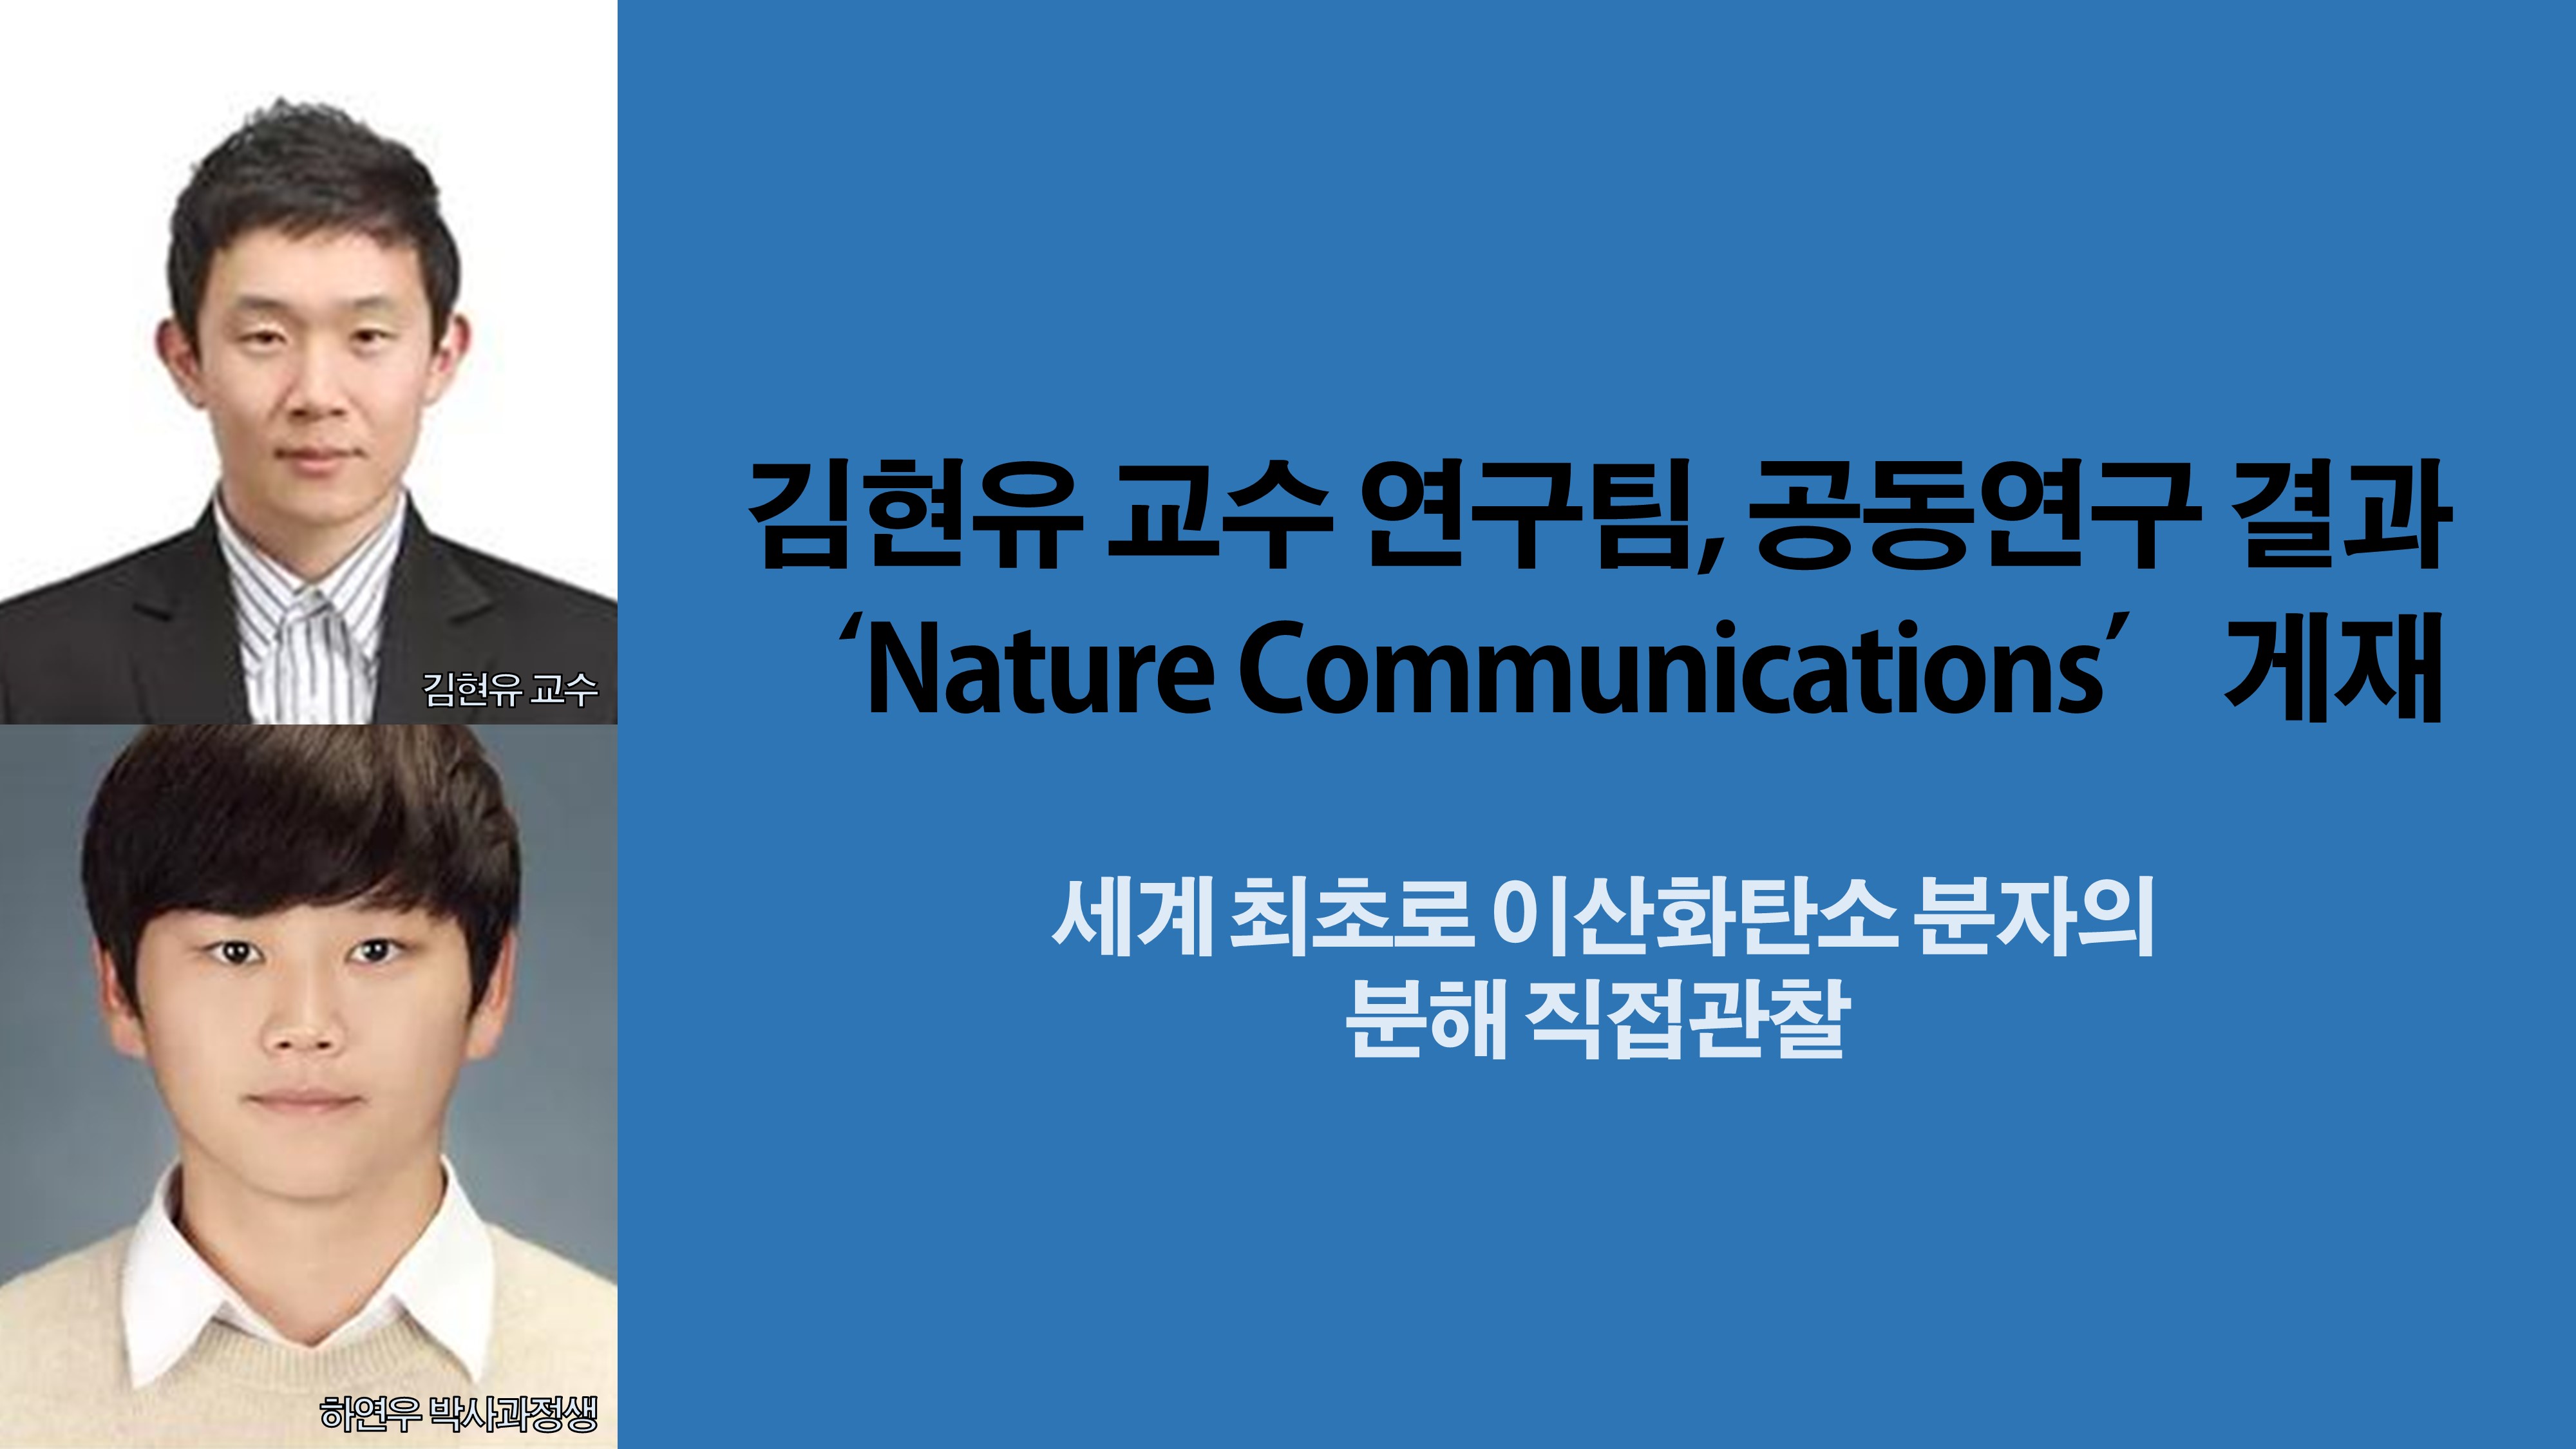 신소재공학과 김현유 교수 연구팀, KAIST 및 GIST와 공동연구 결과 ‘Nature Communications’ 게재 사진